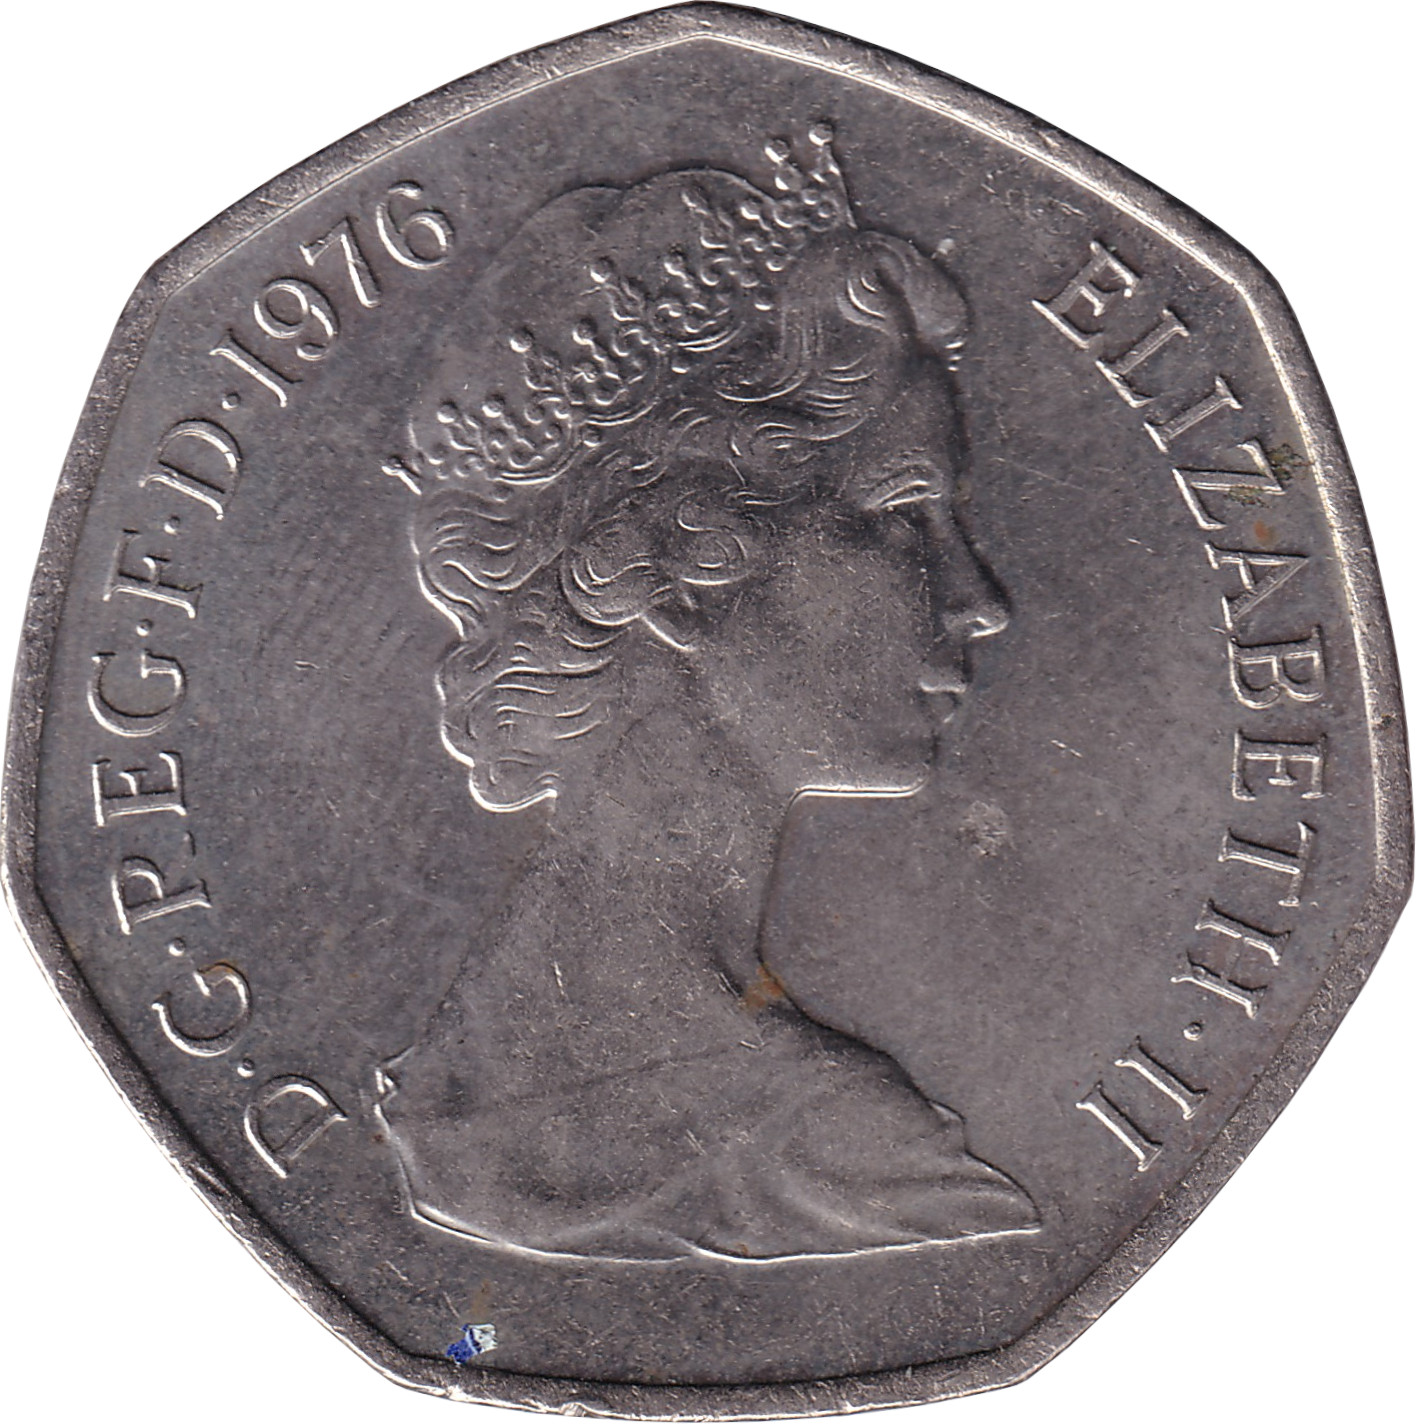 50 pence - Elizabeth II - Young bust